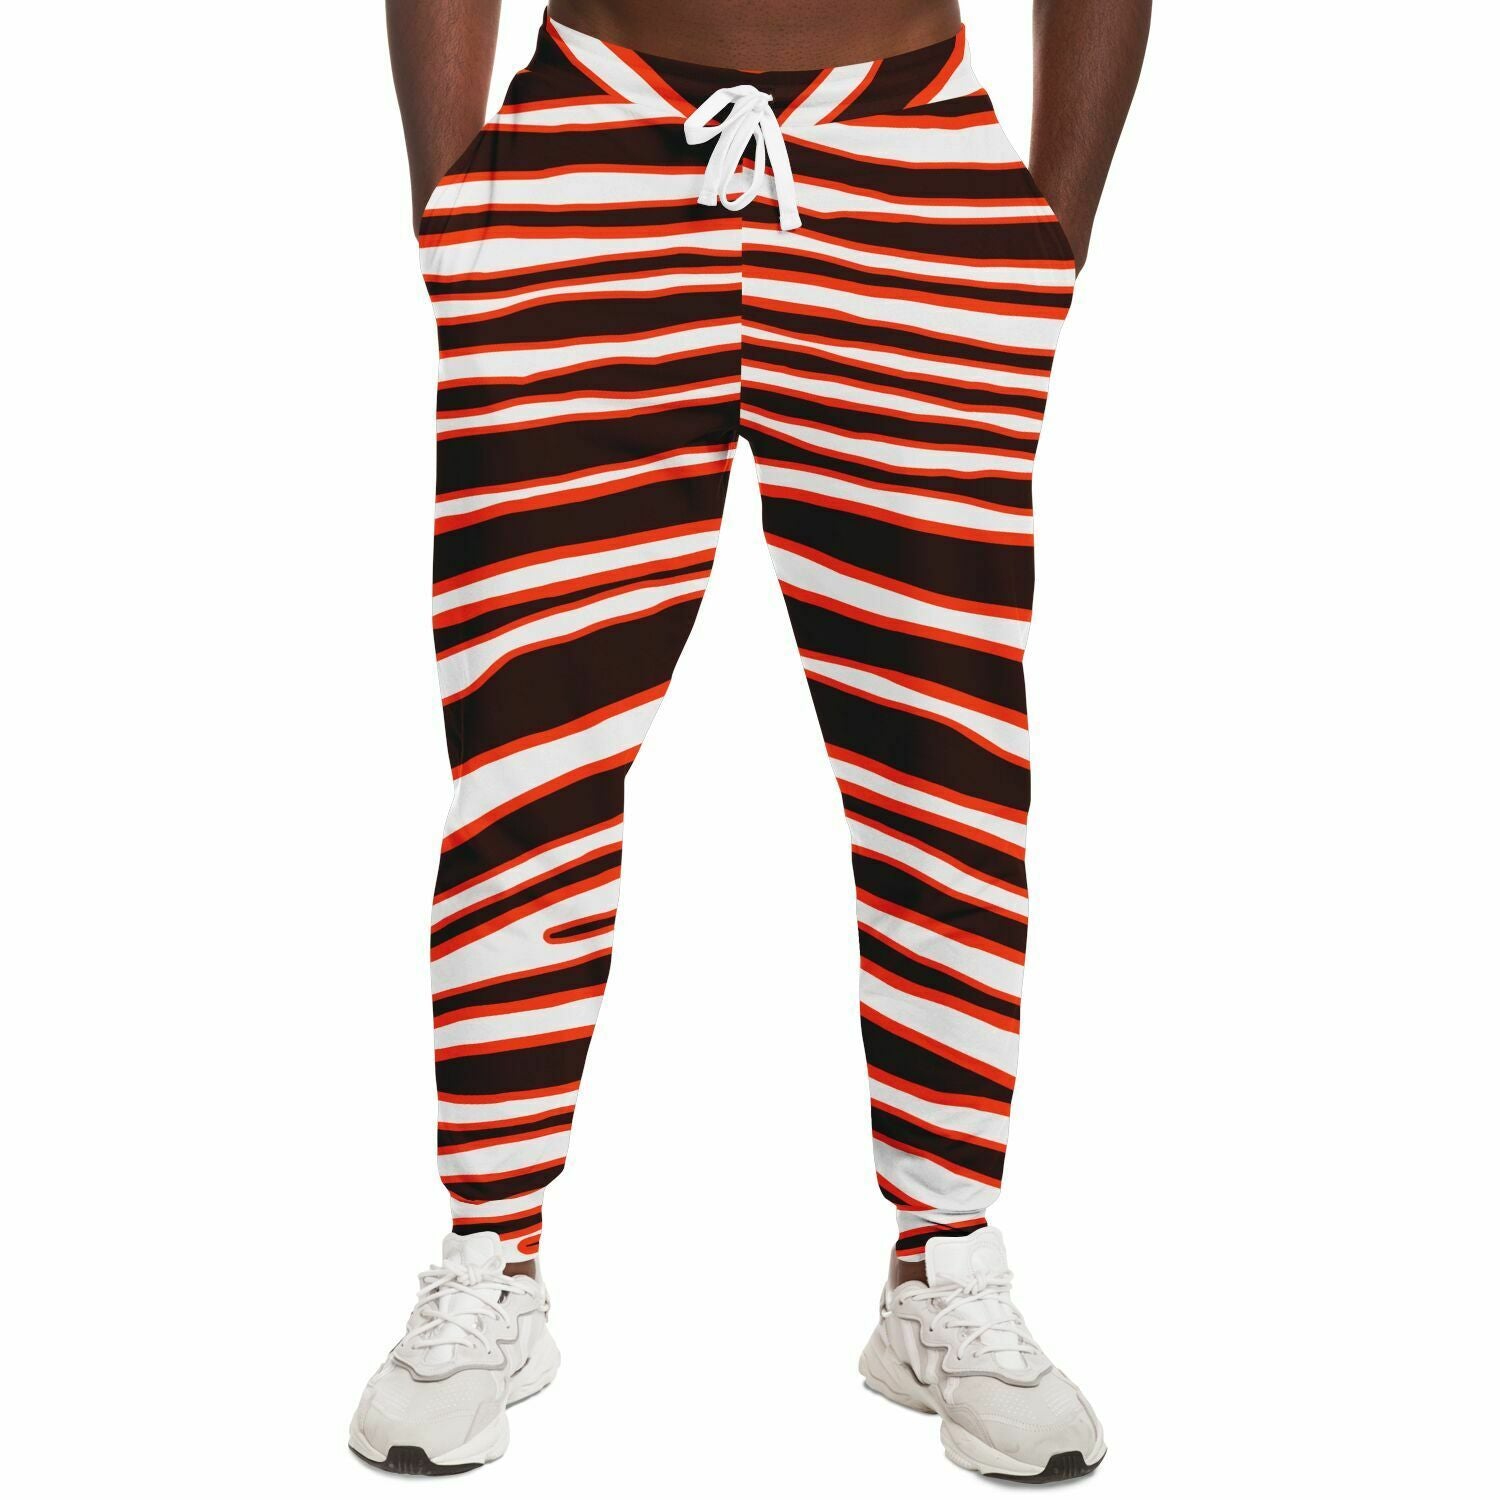 Unisex Cleveland Ohio Football Zebra Stripe Animal Pattern Athletic Joggers